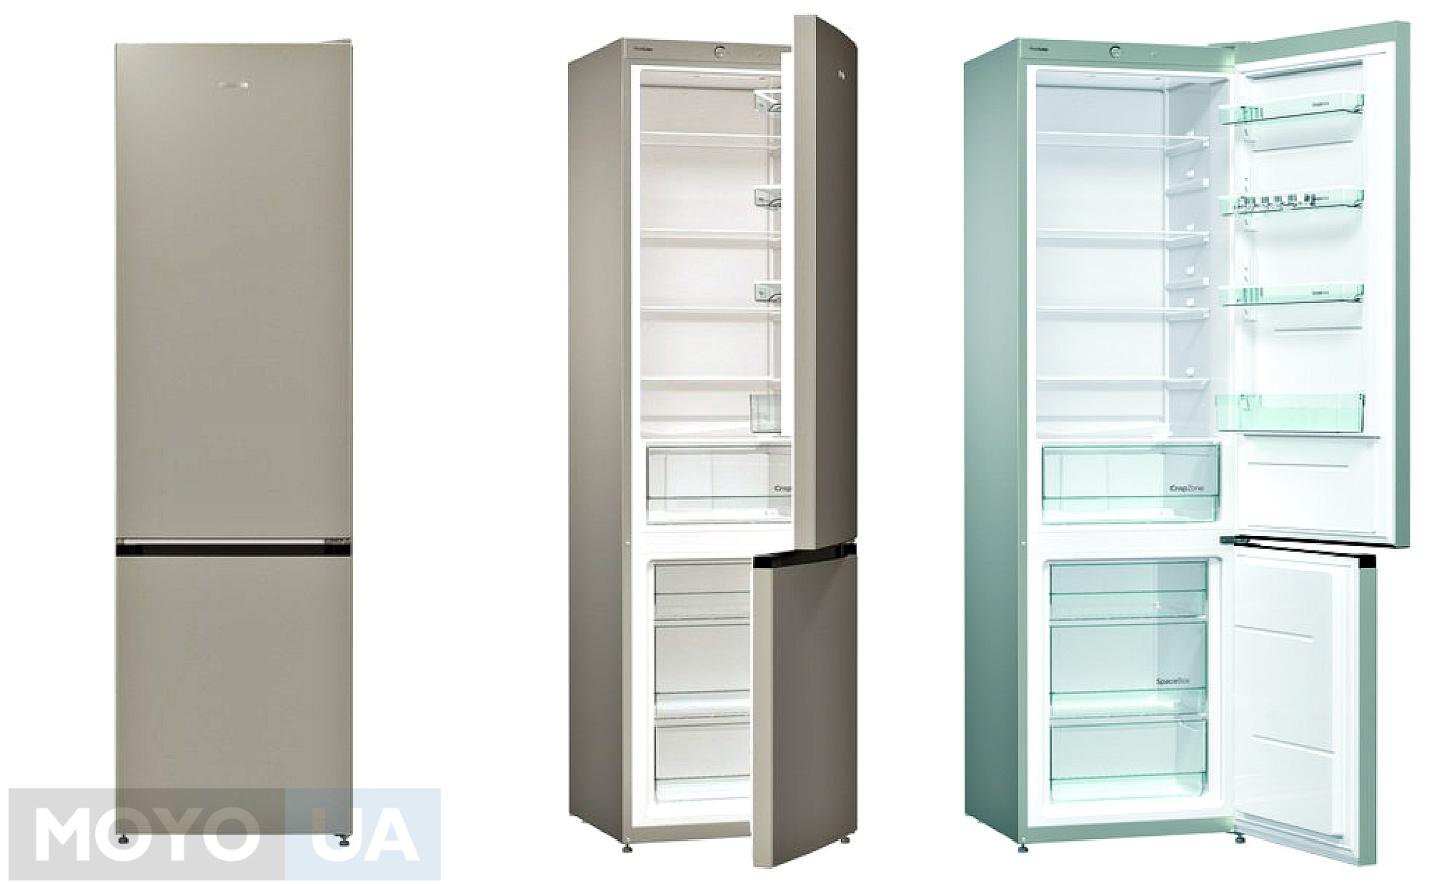 Холодильник Gorenje RK621PS4